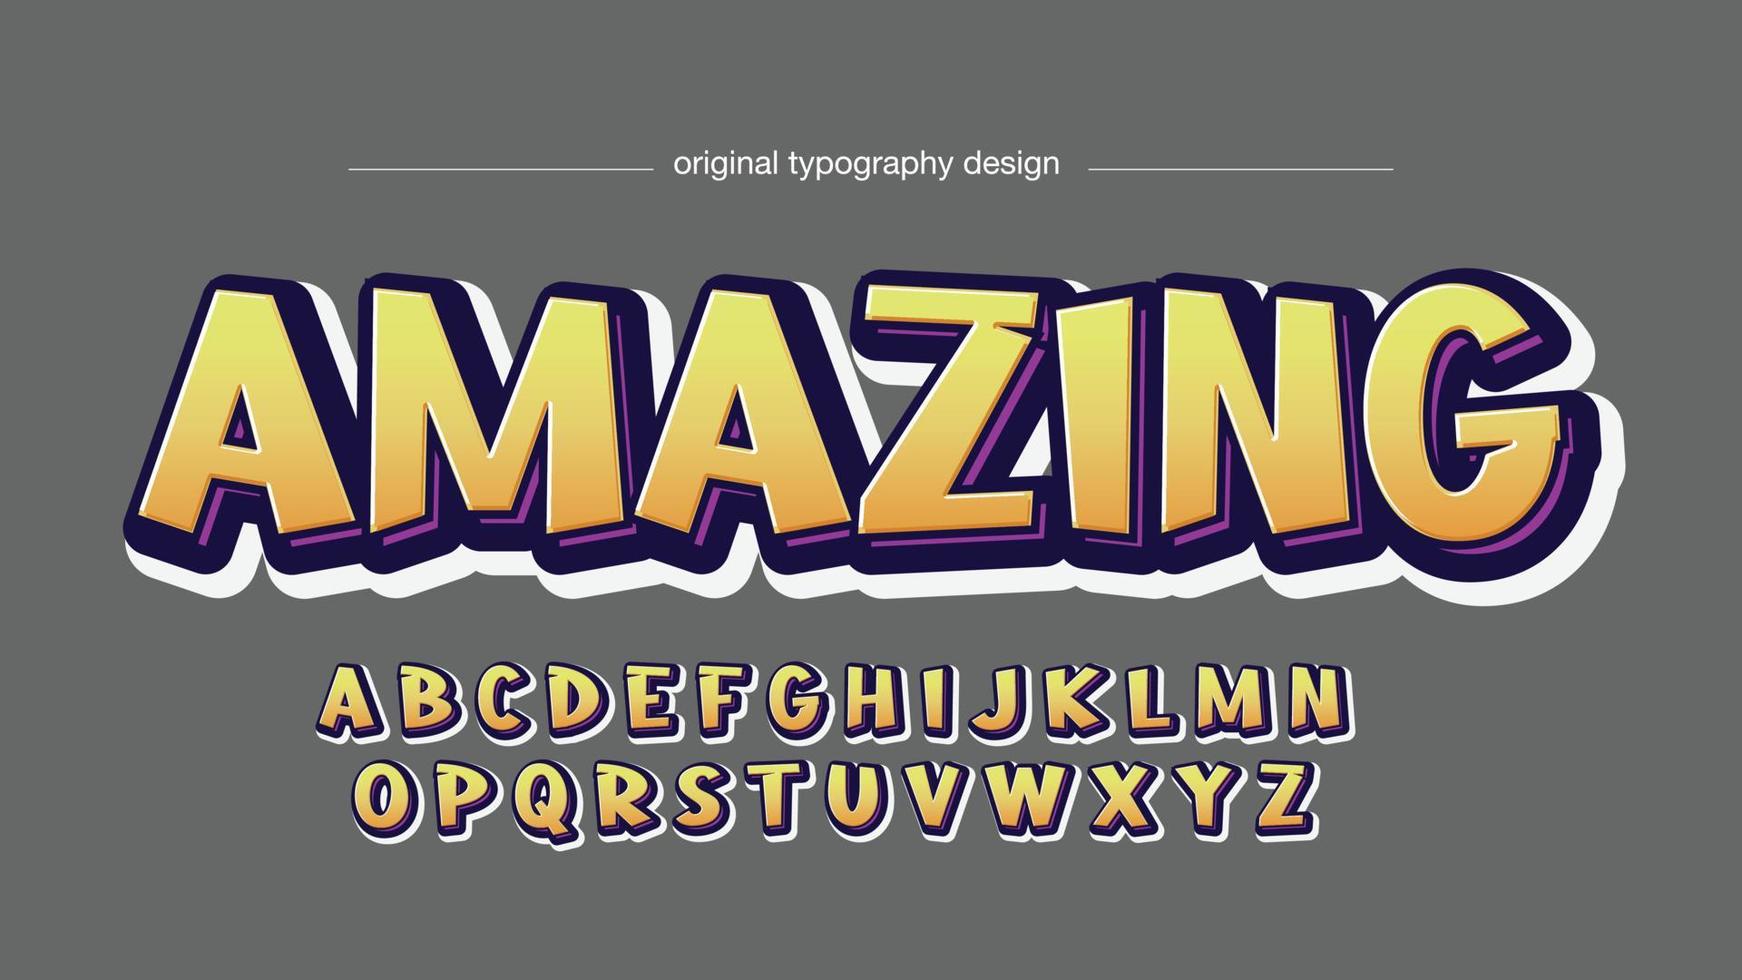 typographie d'affichage de dessin animé 3d jaune vecteur